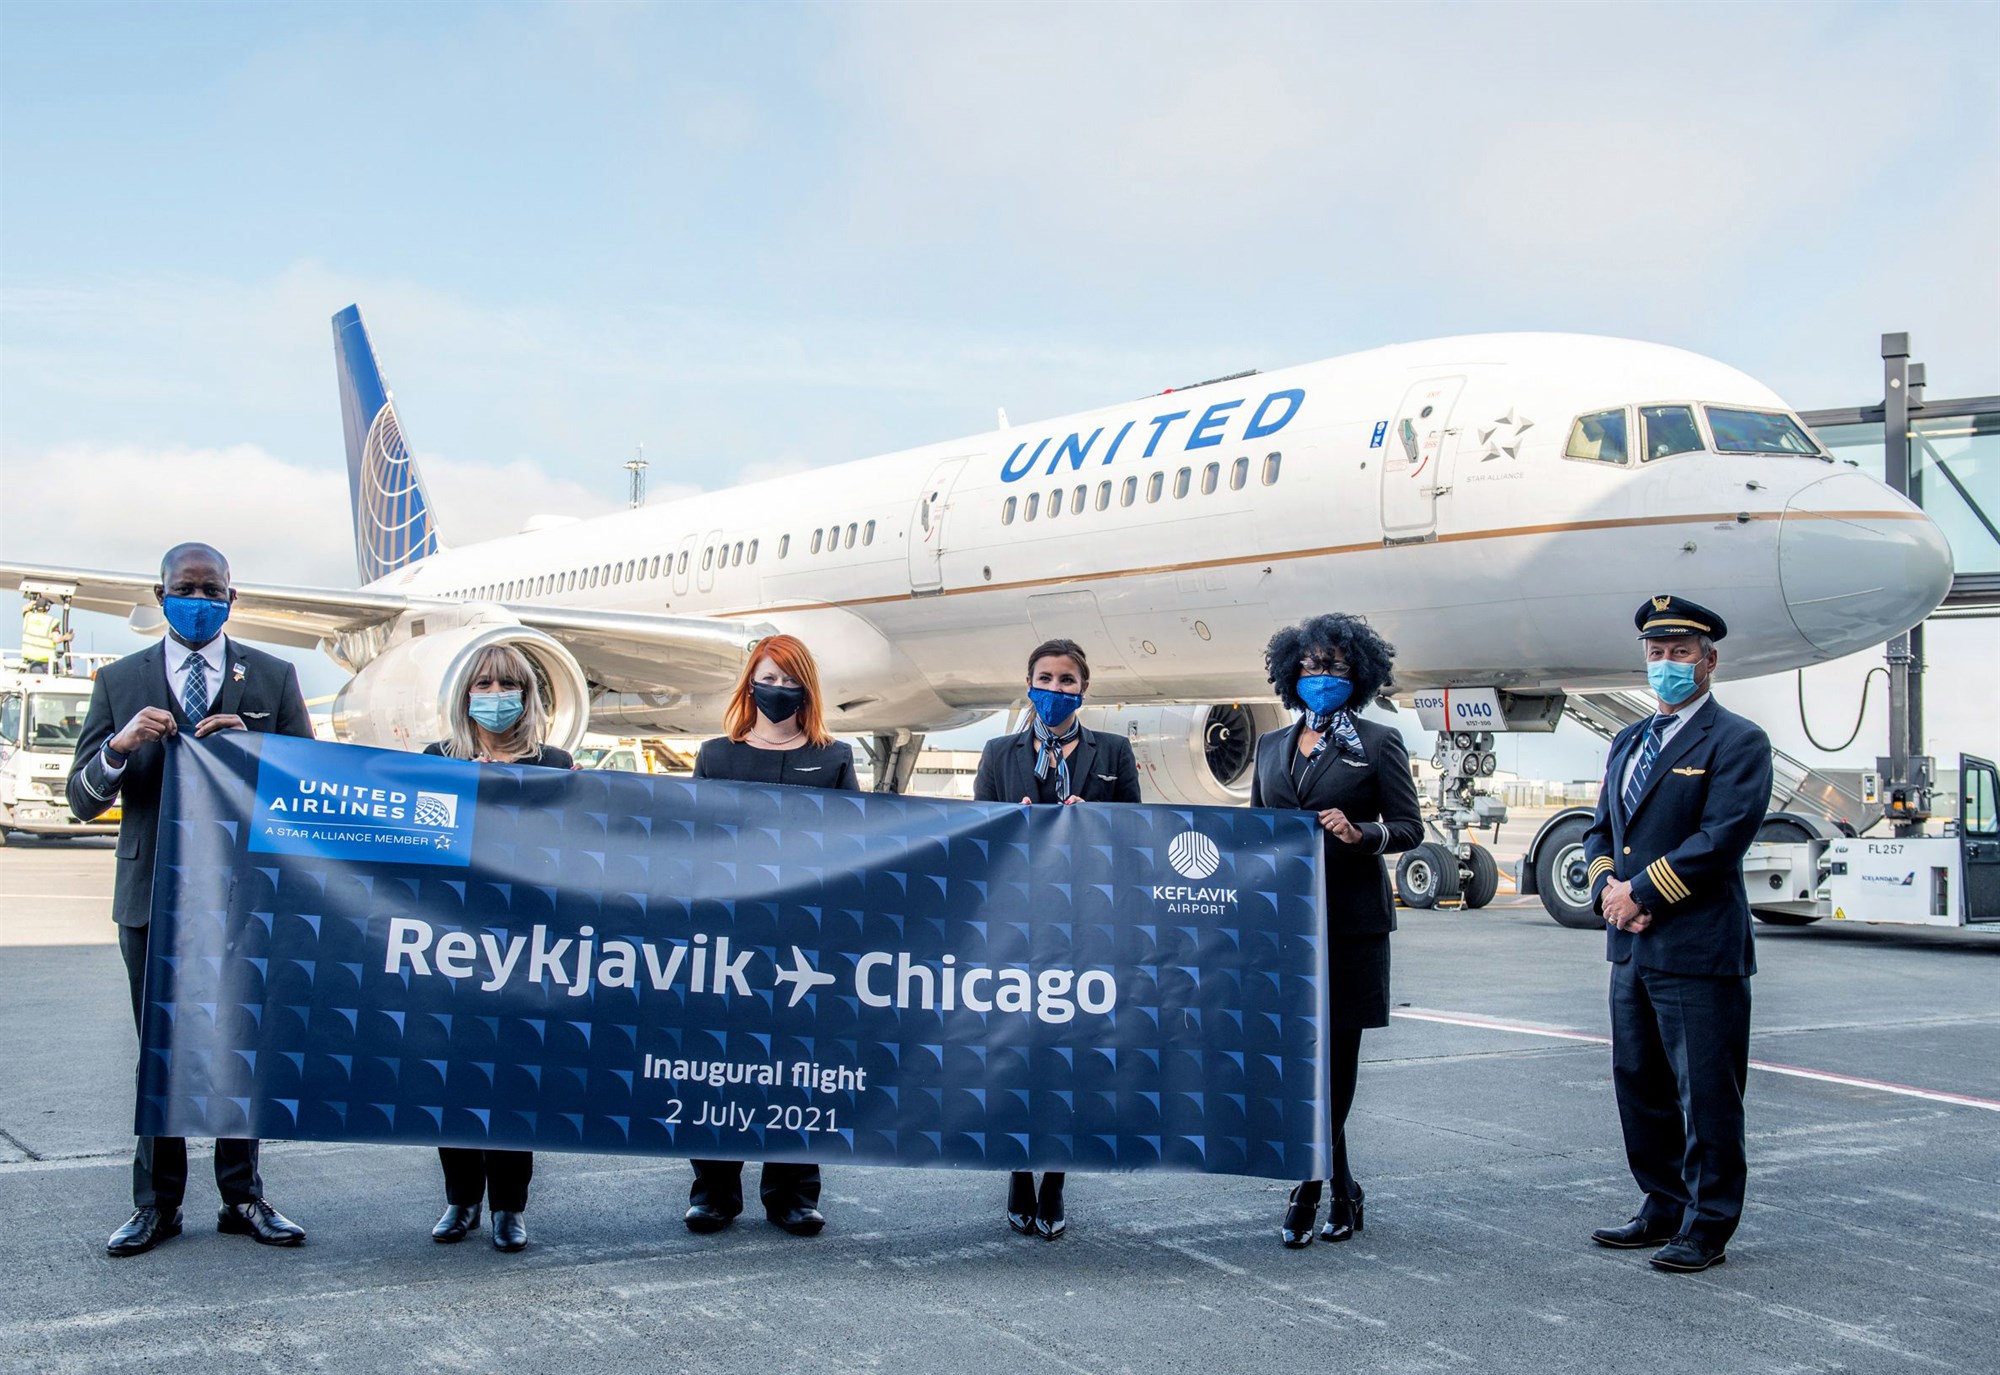 United Airlines hefur flug til Chicago